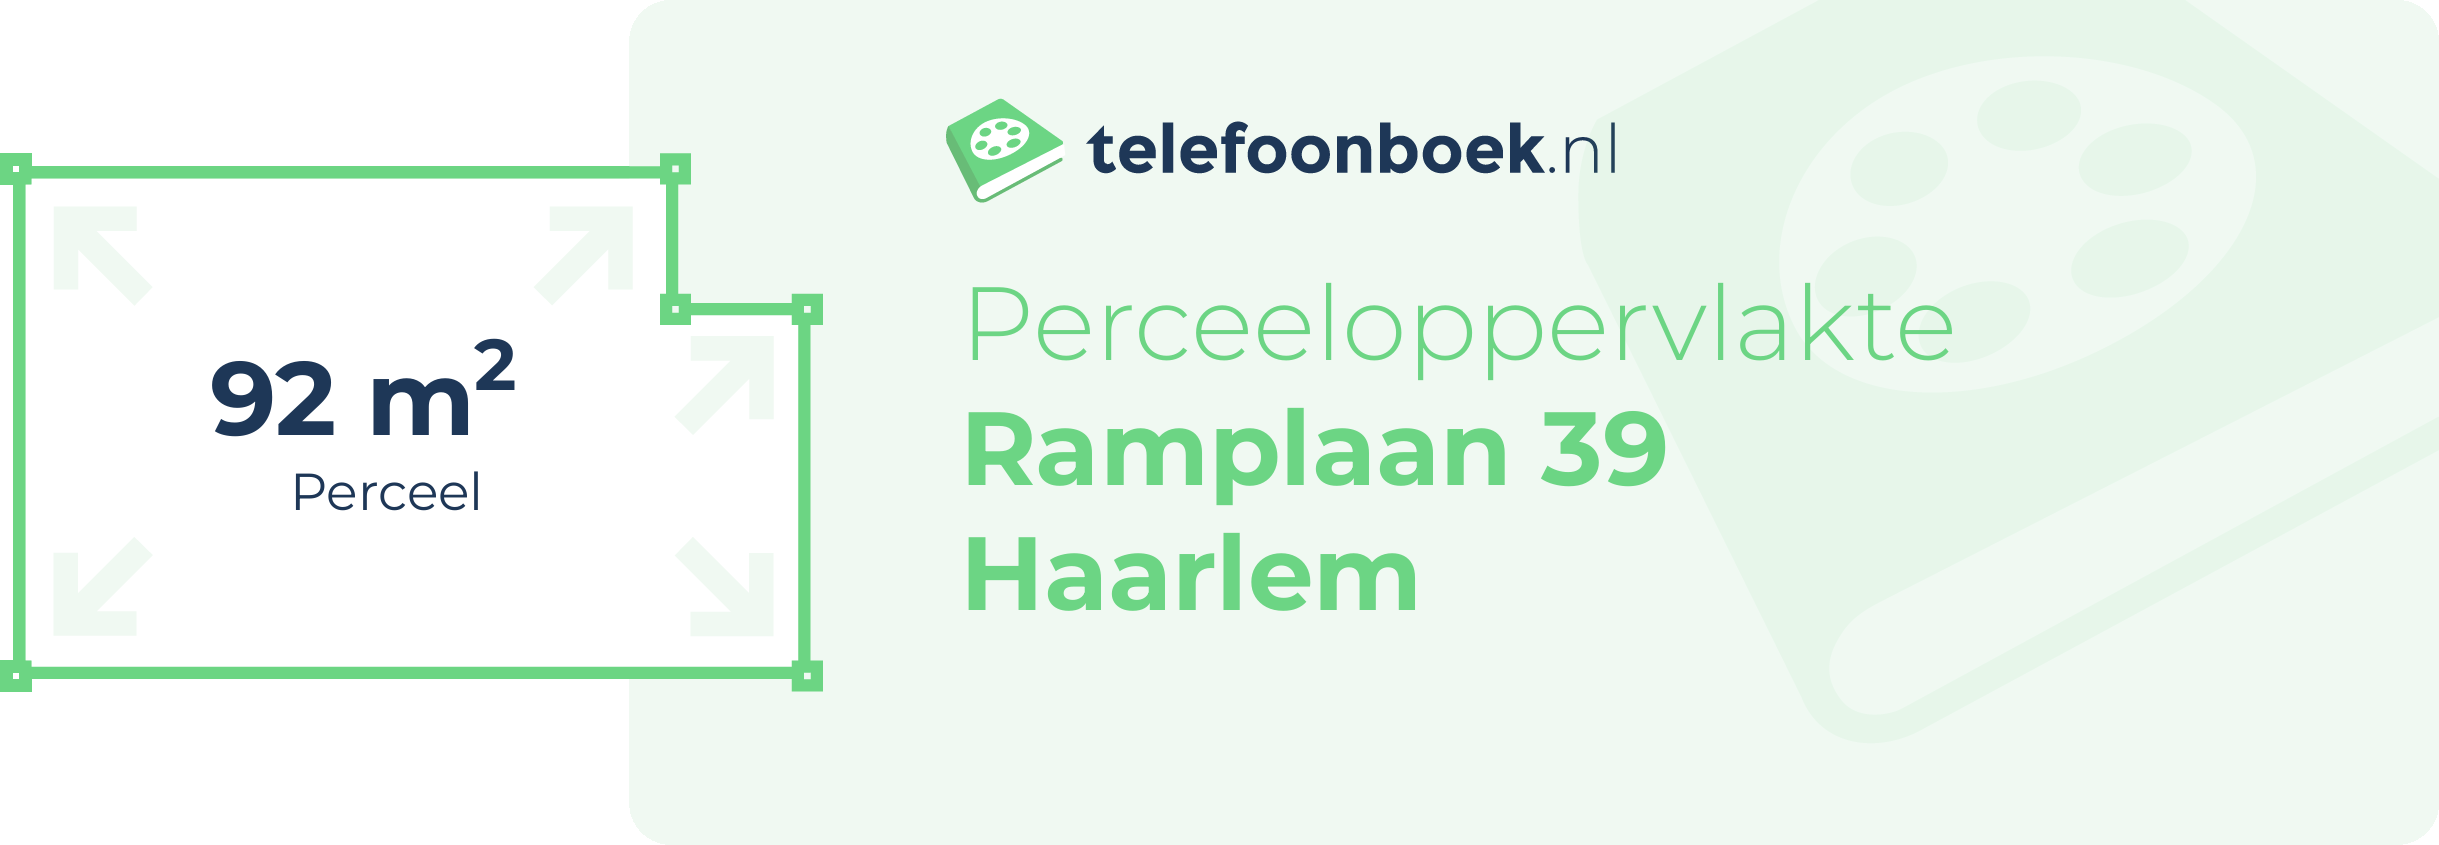 Perceeloppervlakte Ramplaan 39 Haarlem